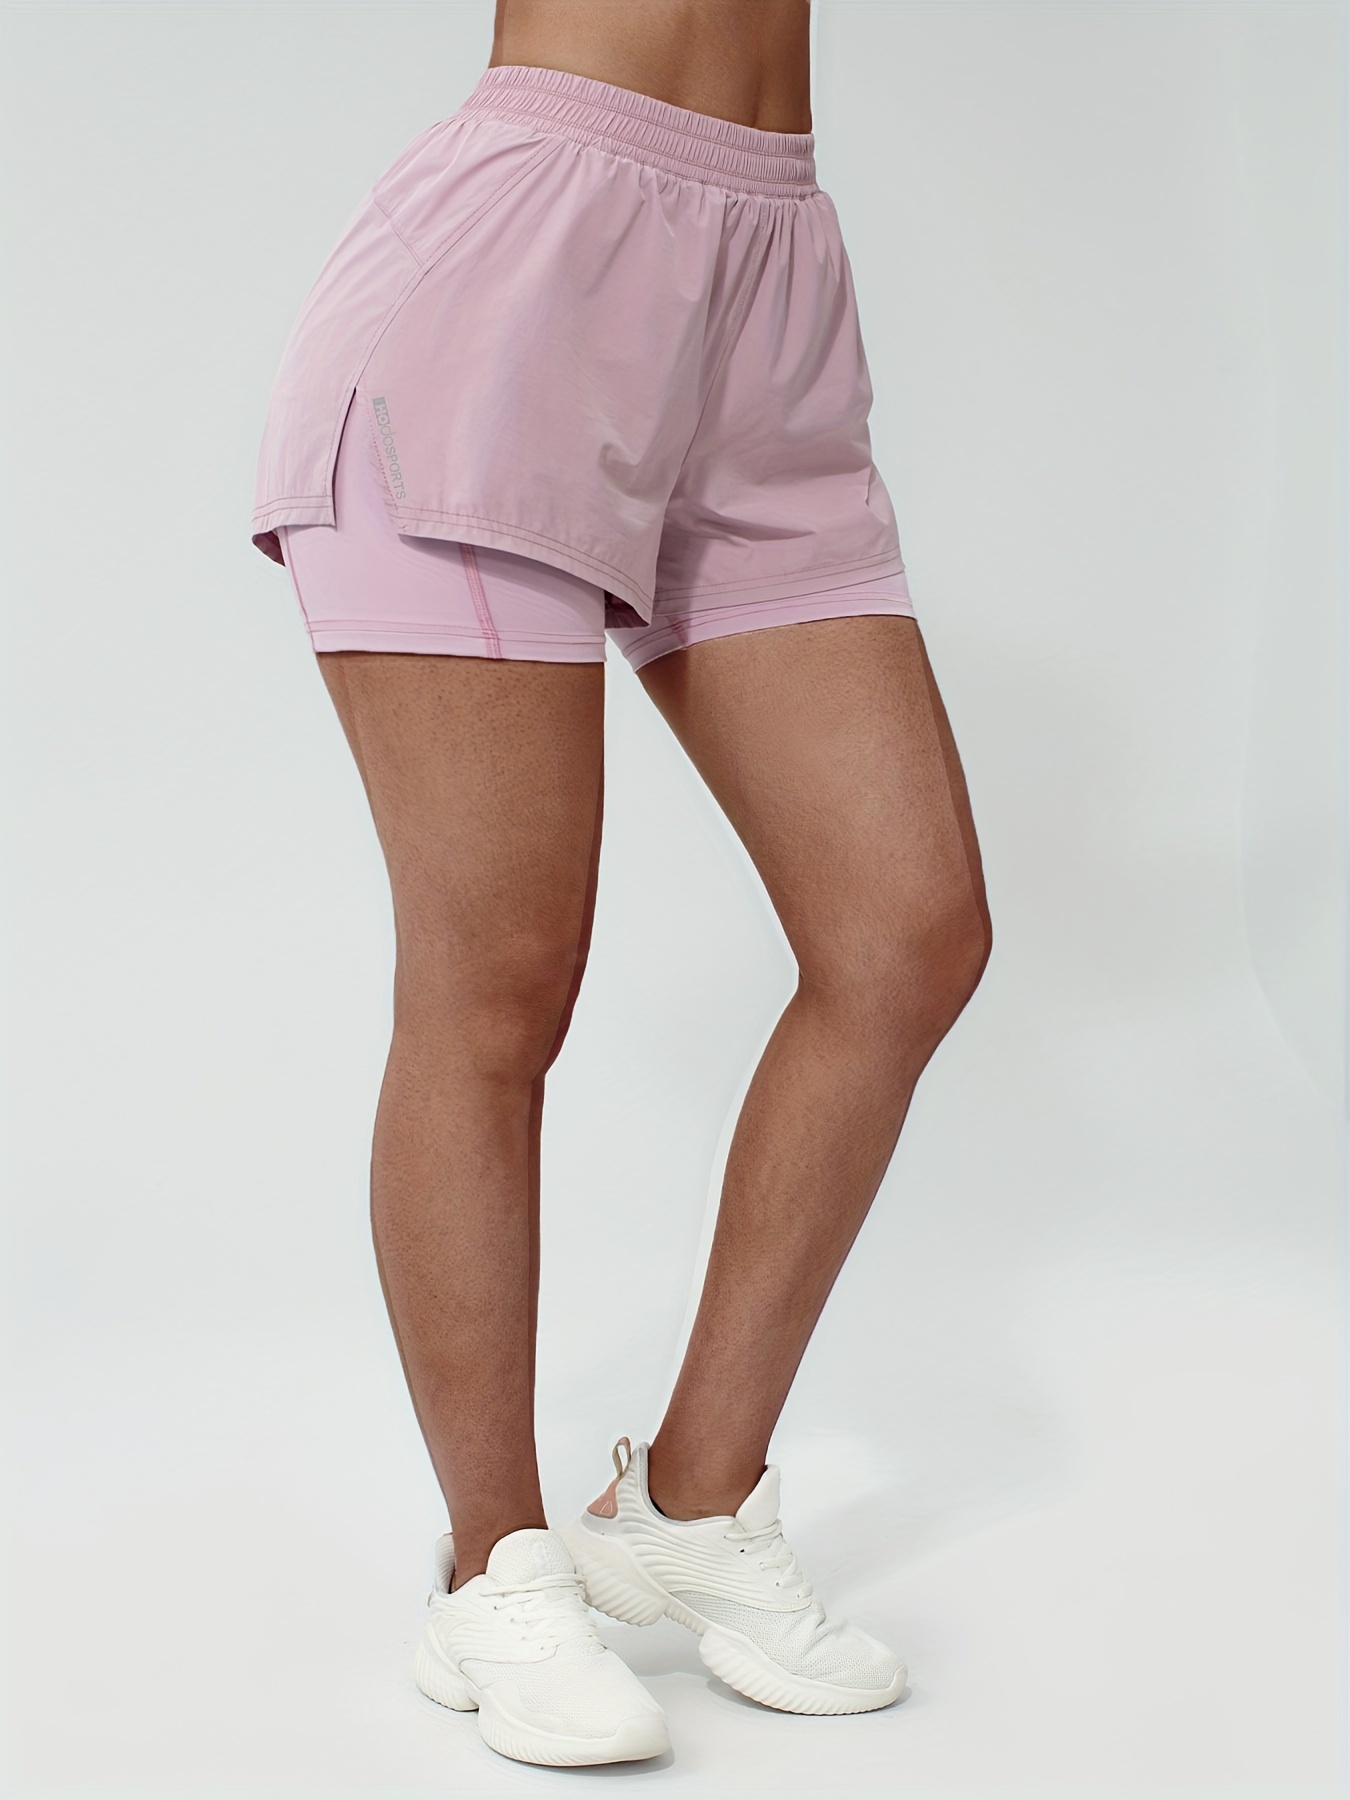  NP - Pantalones cortos deportivos para mujer, con